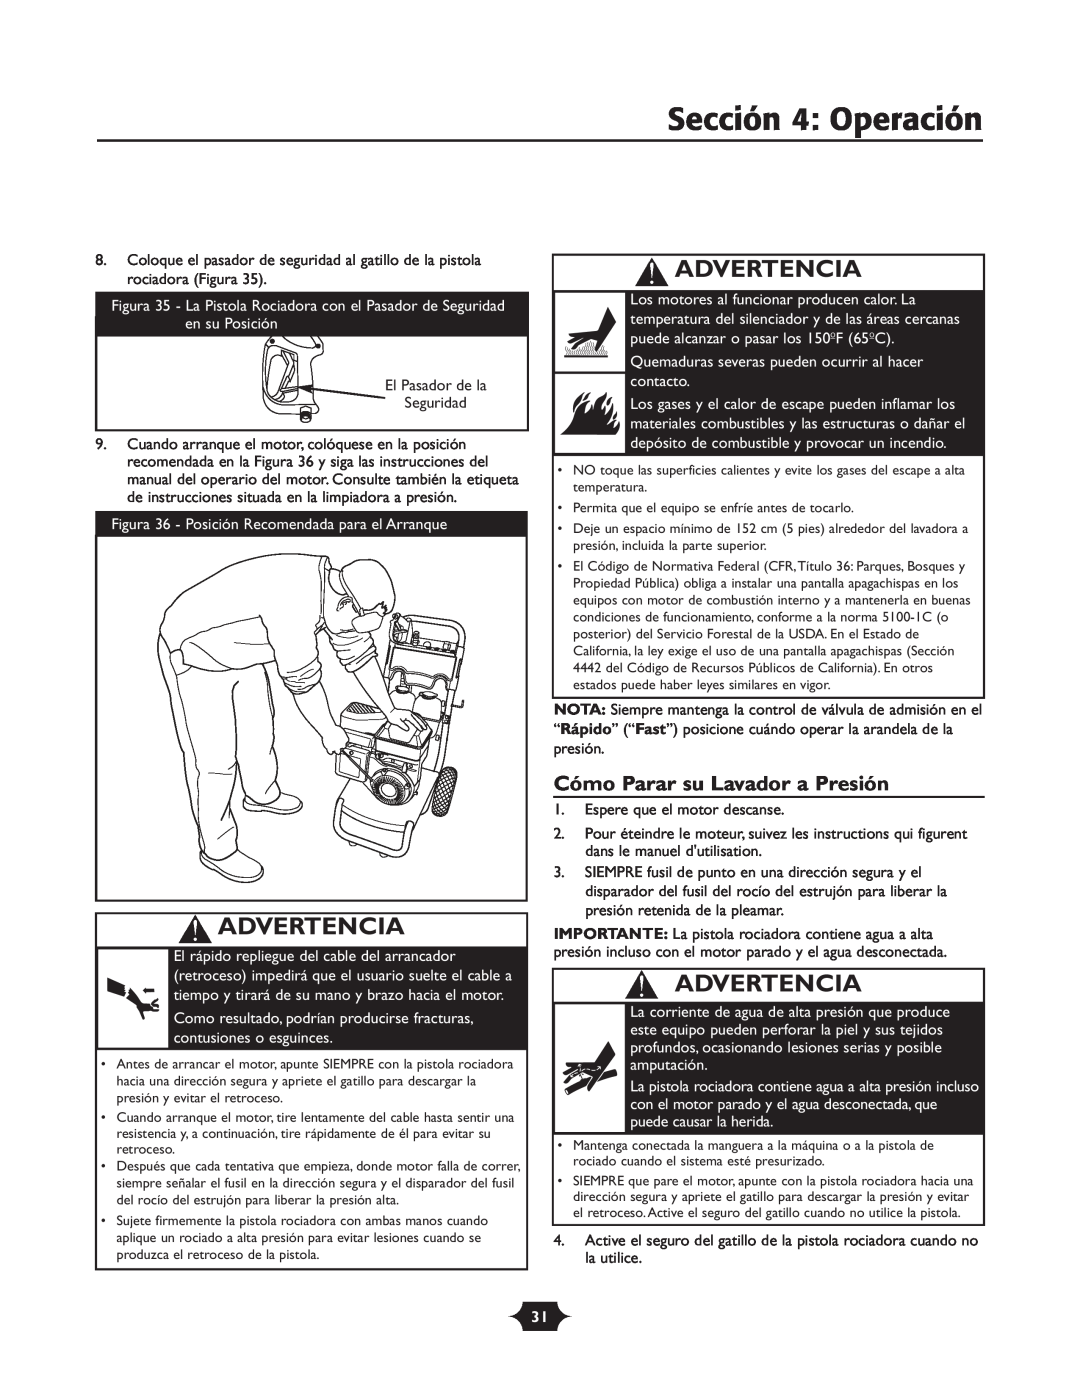 Briggs & Stratton 20263 manual Sección 4 Operación, Cómo Parar su Lavador a Presión, Advertencia 